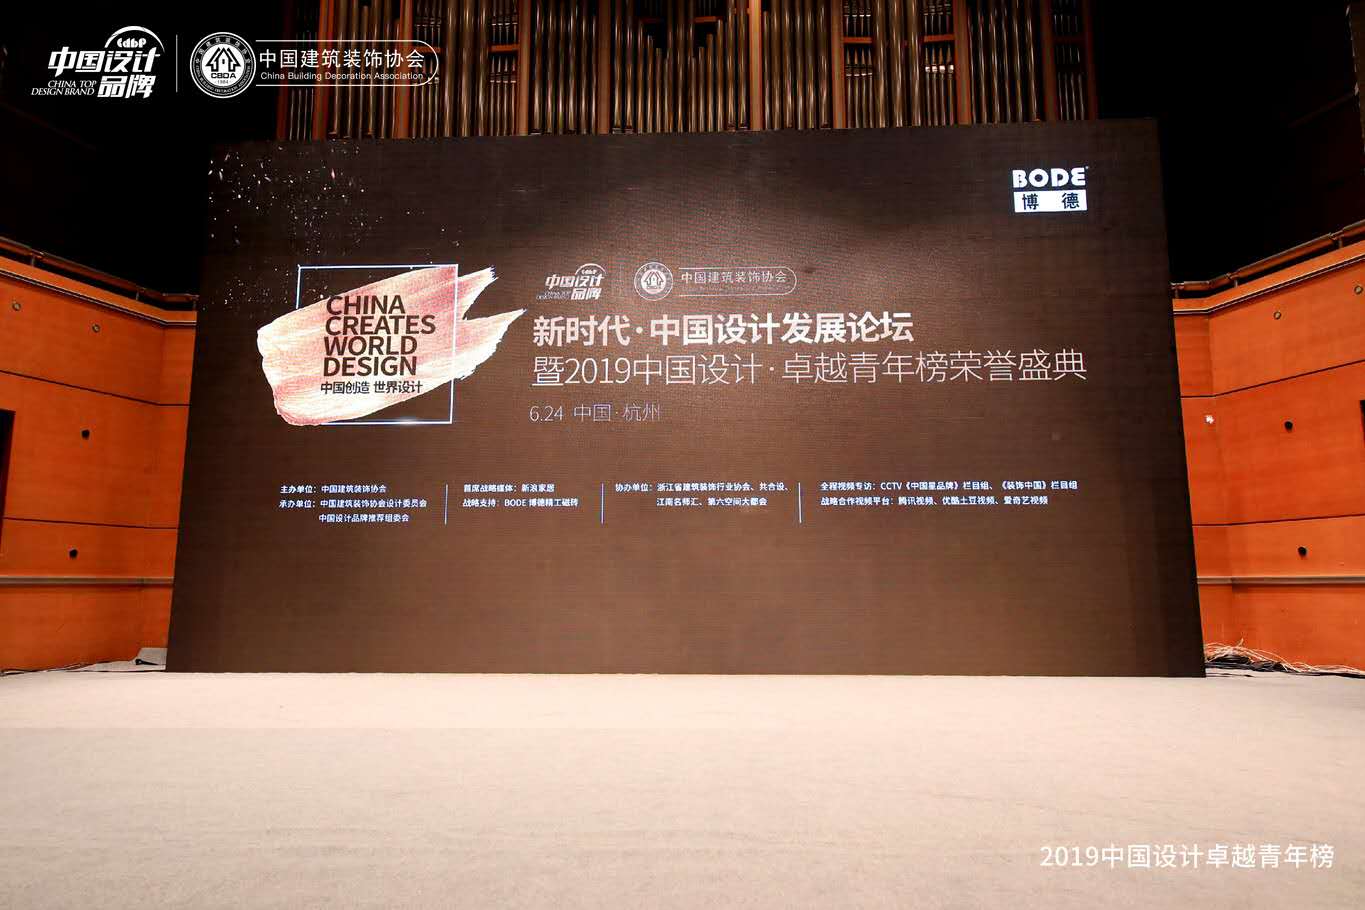 上一篇：千名设计师齐聚杭州见证中国设计•卓越青年榜荣耀启动